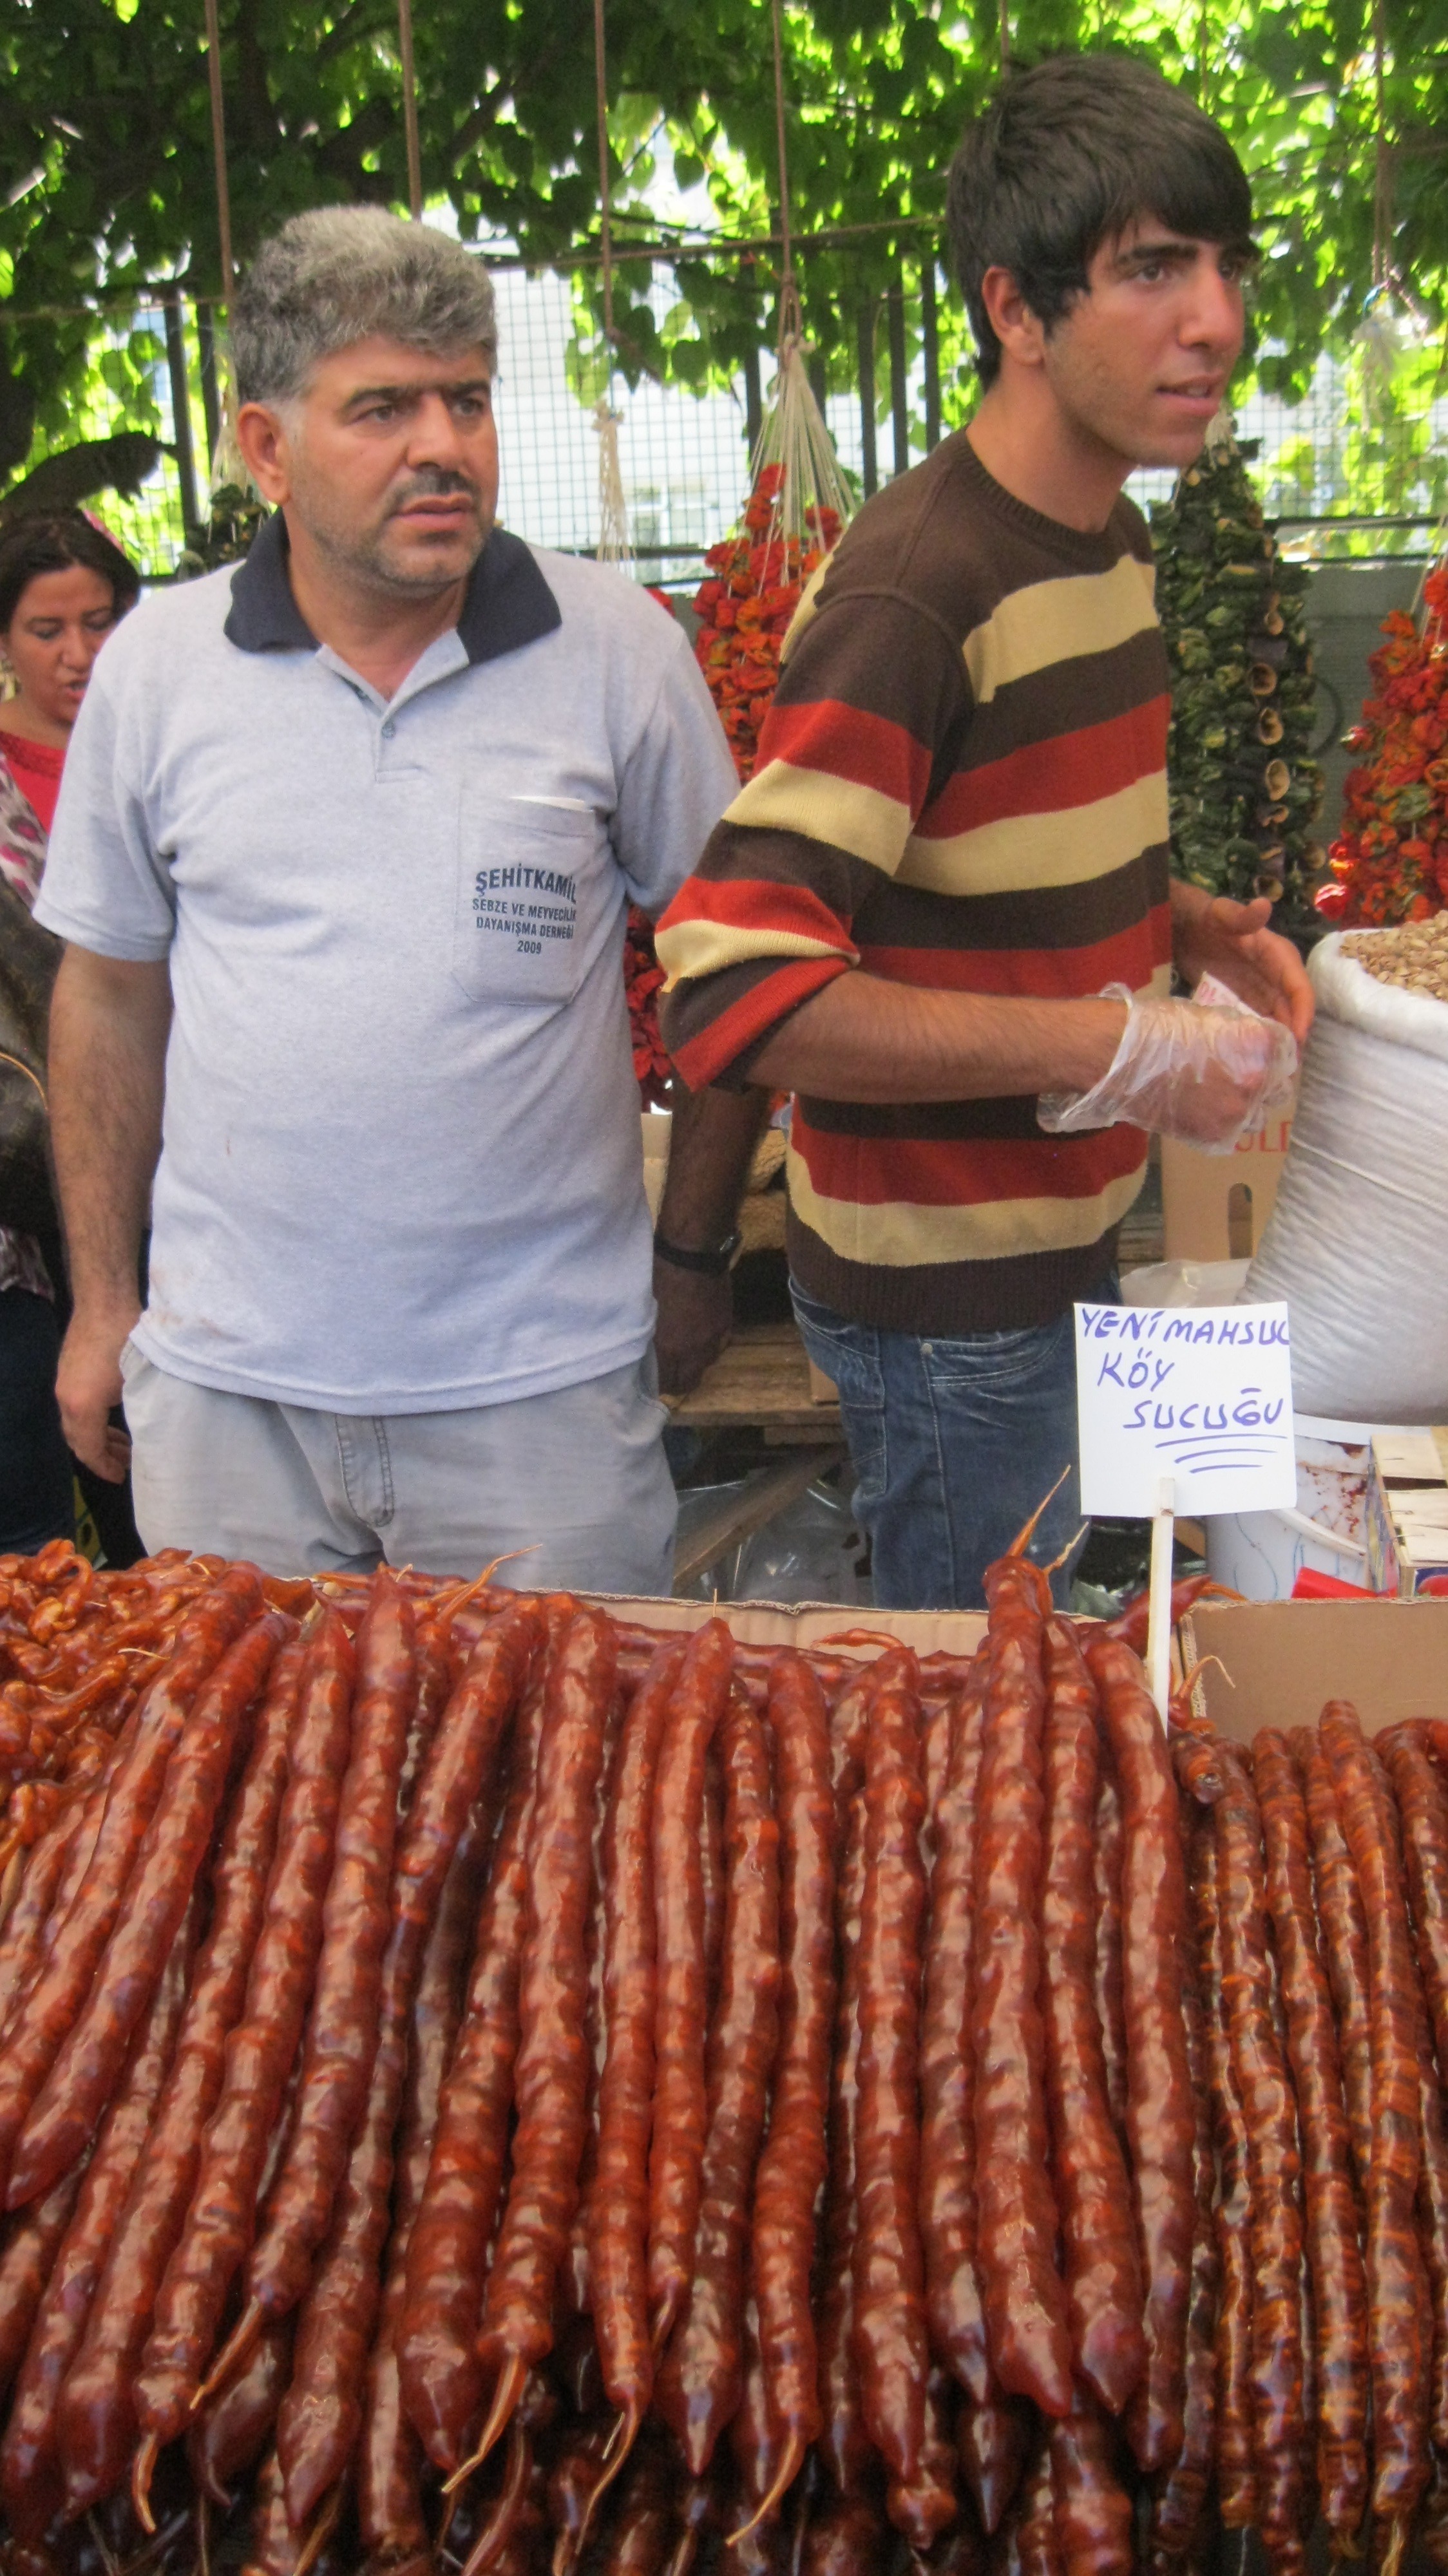 7i Gaziantep food festival Goztepe 23.9.12